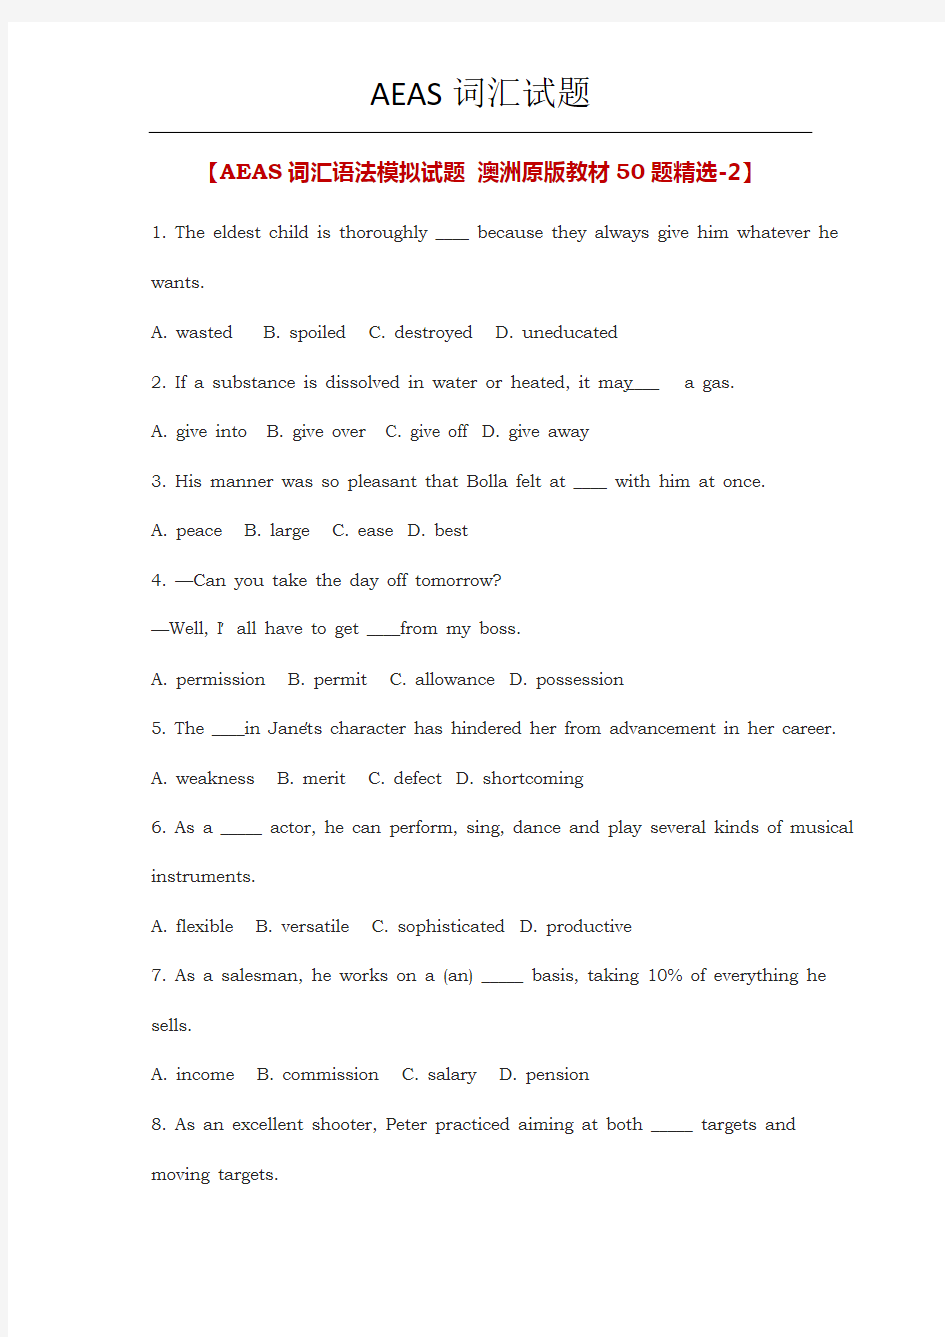 AEAS词汇语法模拟试题-澳洲原版教材50题精选-2